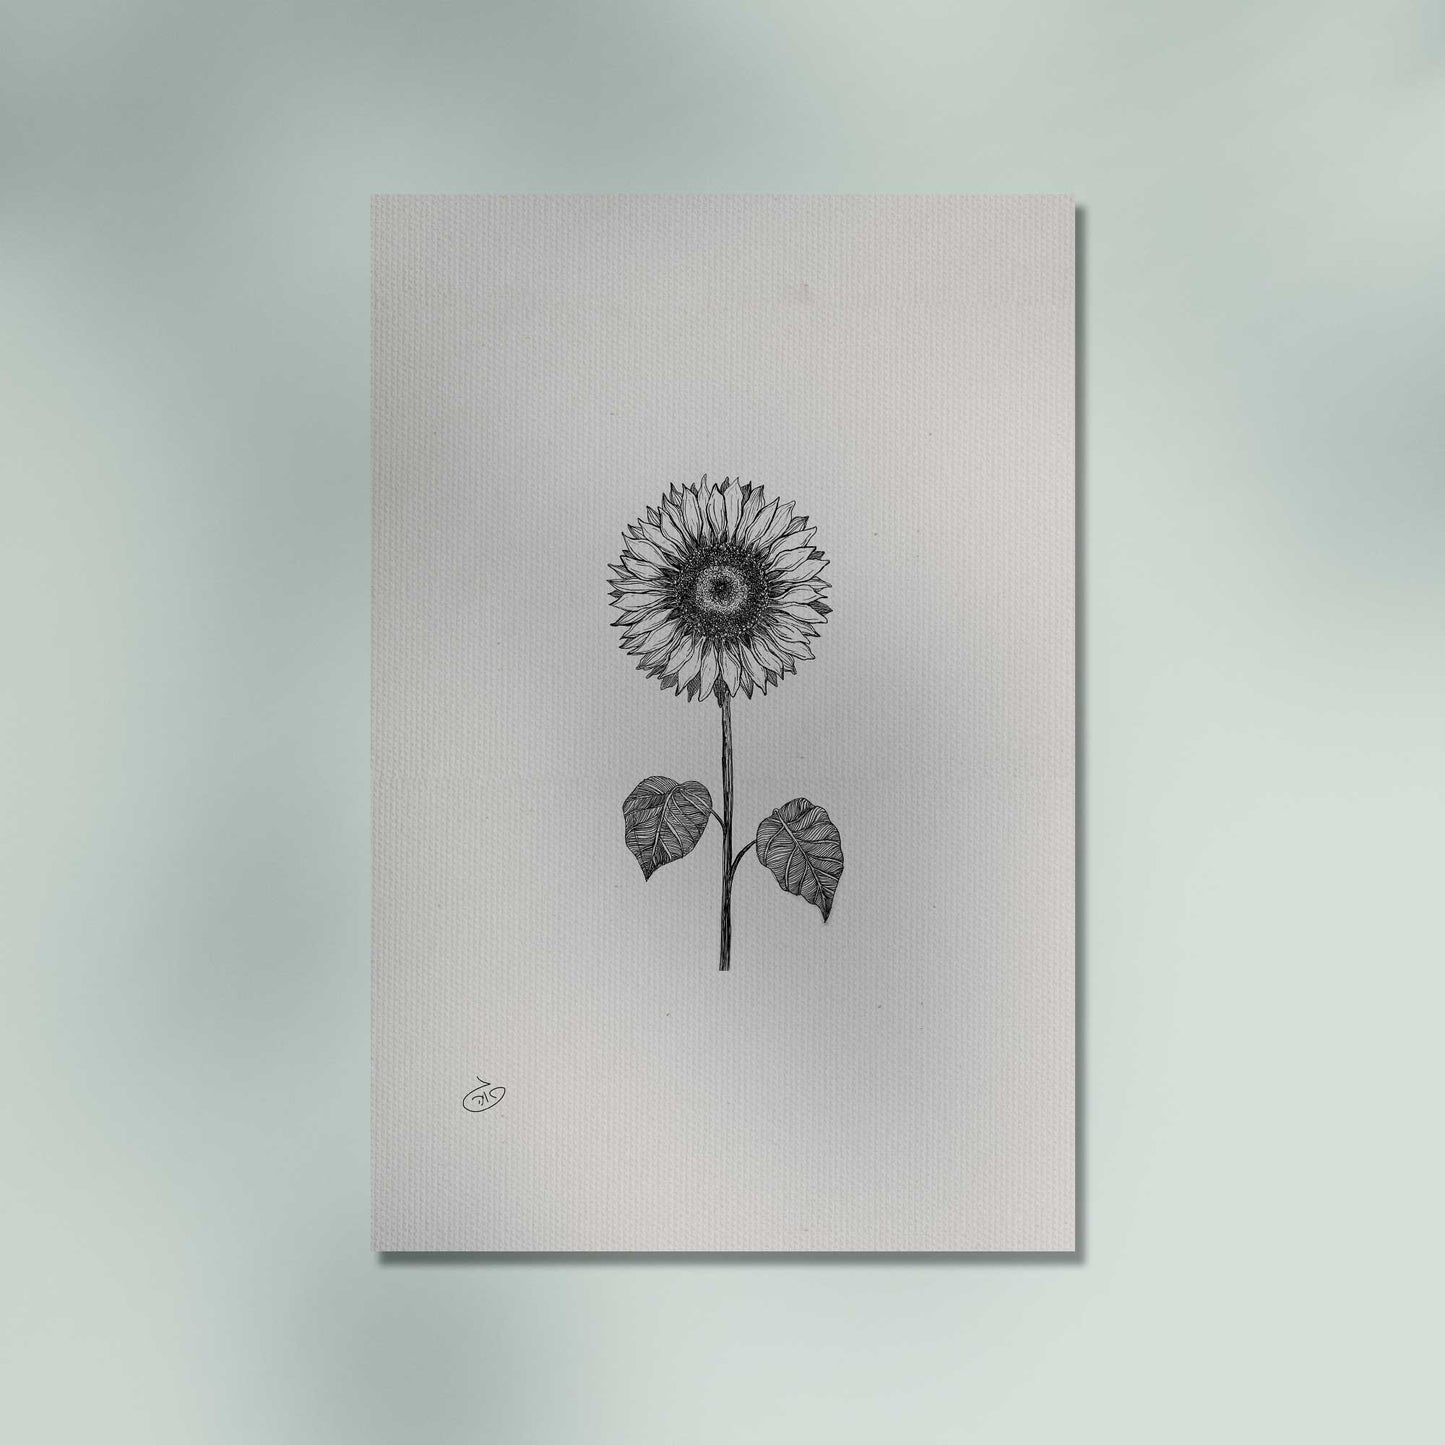 פוסטר Sunflower Flower Poster ציור מקורי של גאיה המקדם את המודעות לאלימות בין בני זוג בכלל וכלפי נשים בפרט